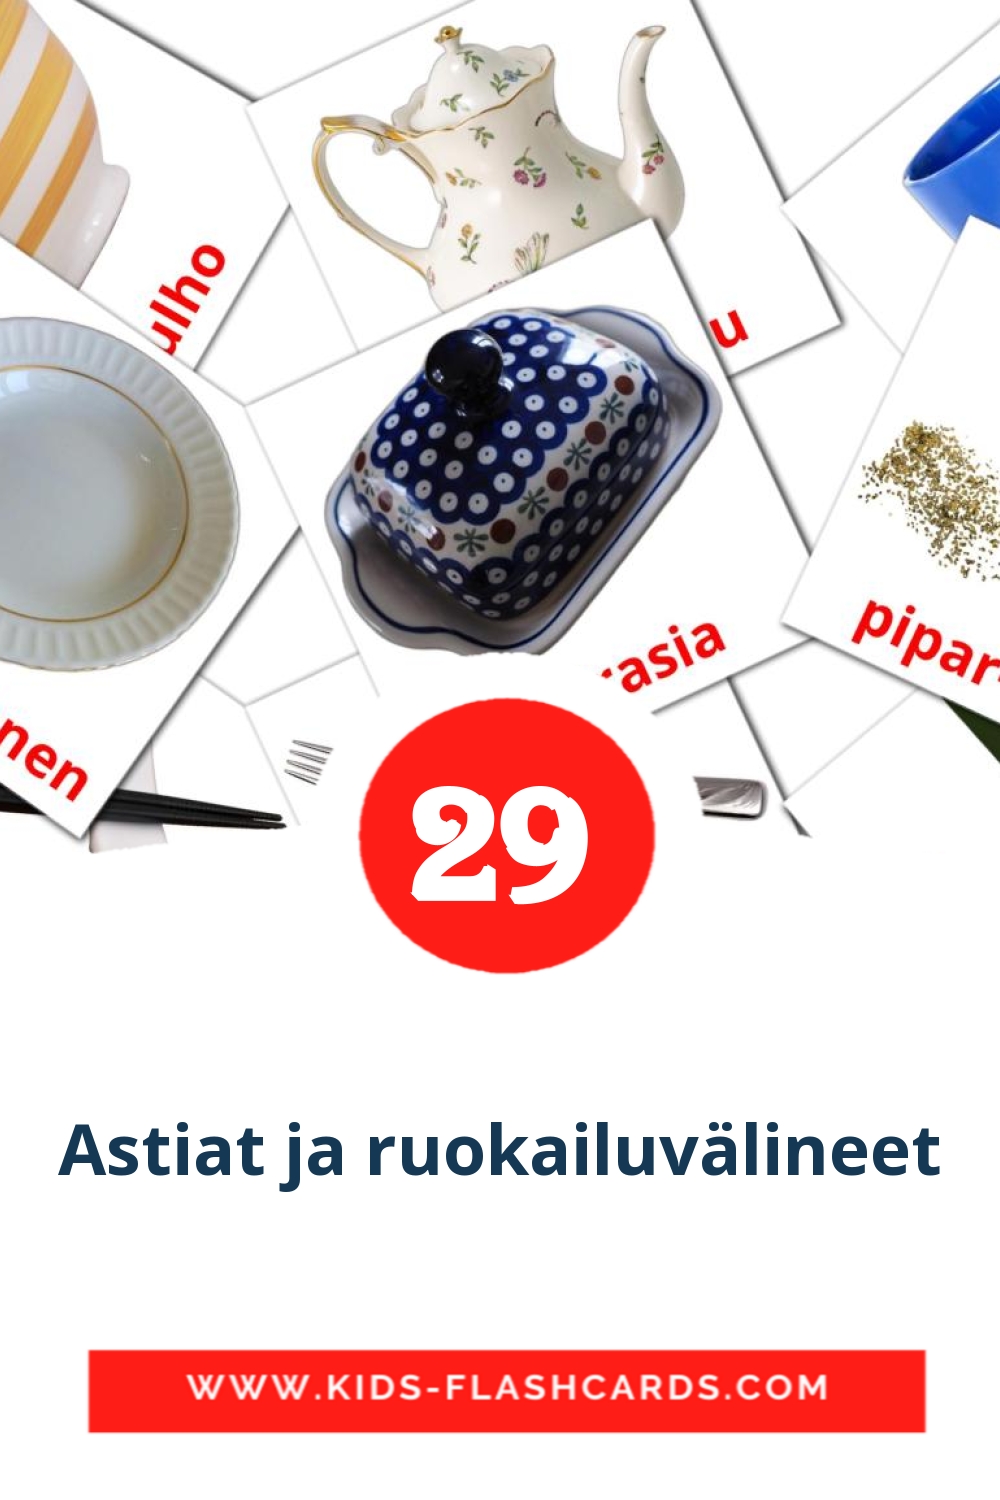 29 Cartões com Imagens de Astiat ja ruokailuvälineet para Jardim de Infância em finlandês